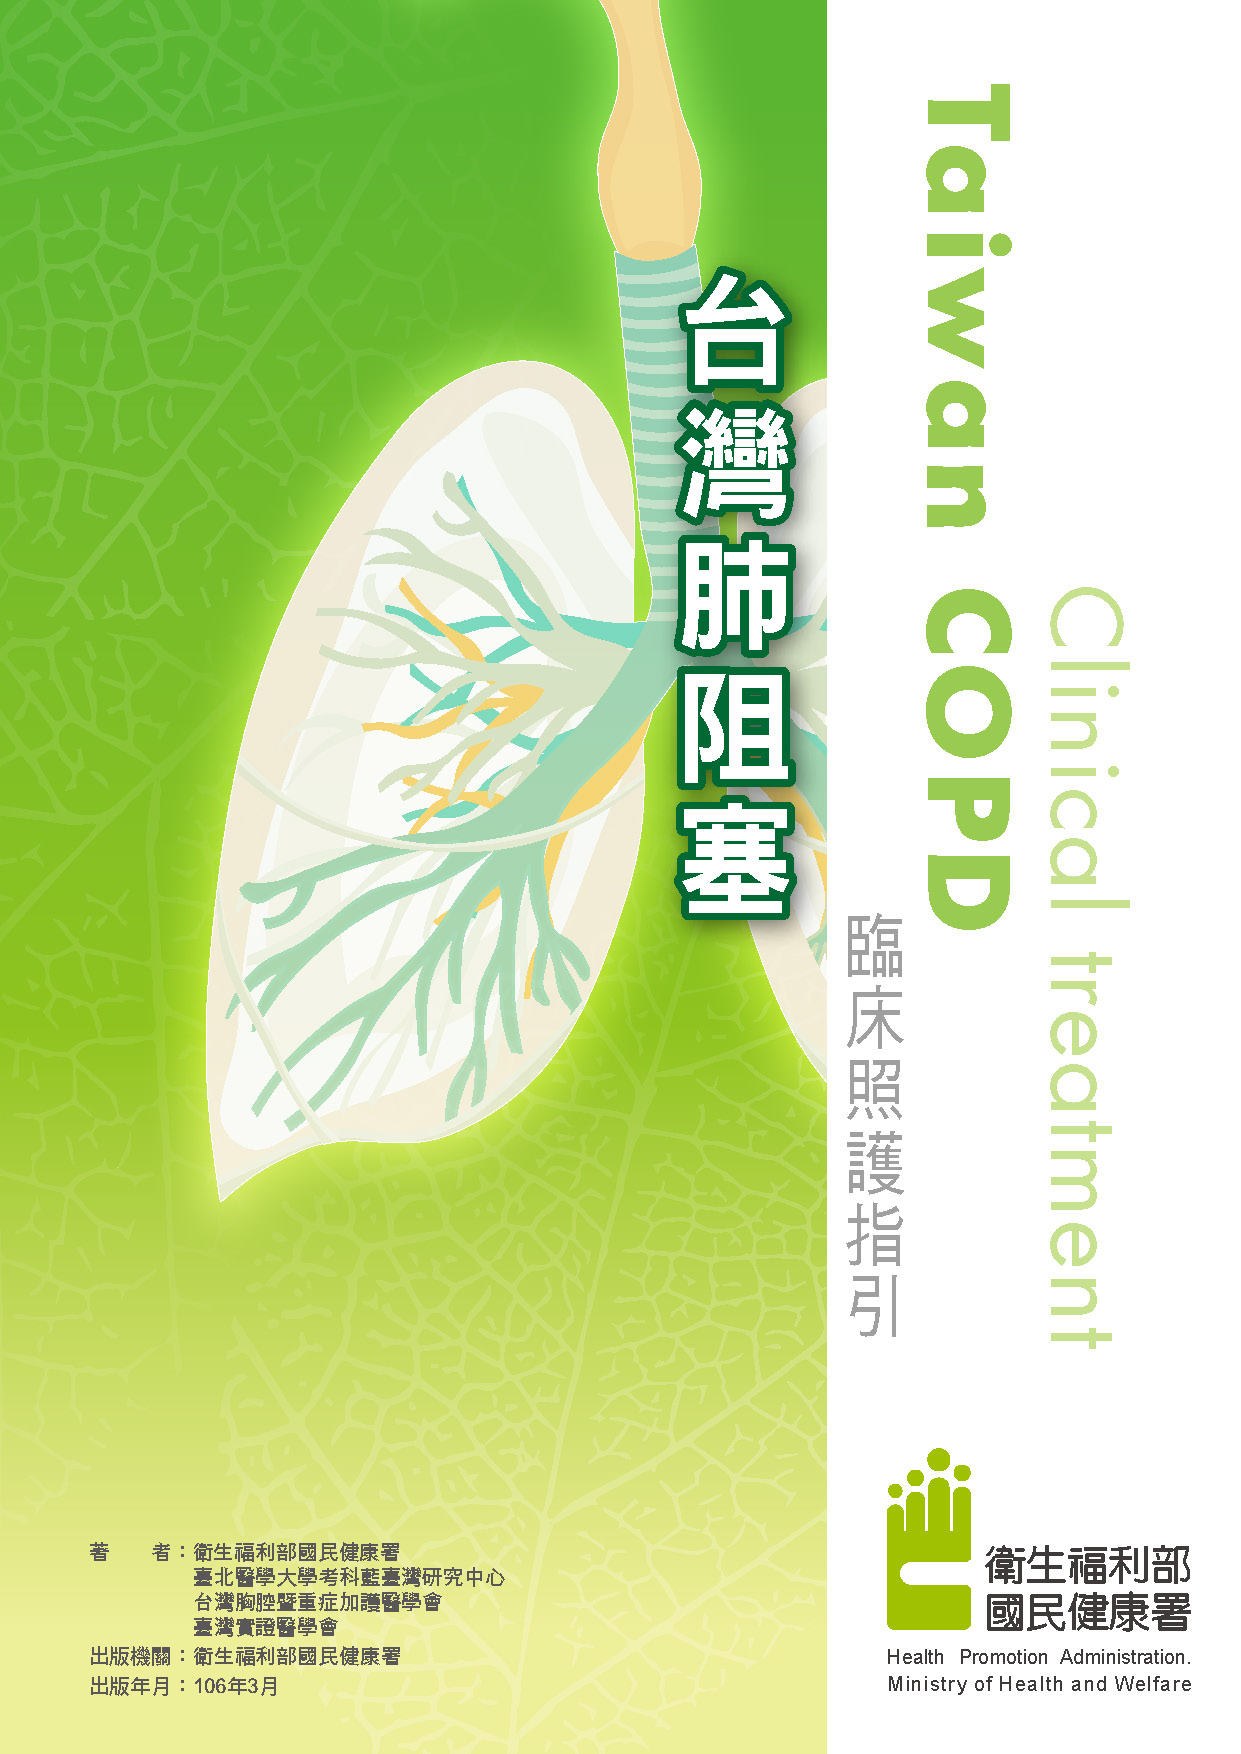 台灣肺阻塞臨床照護指引文章照片